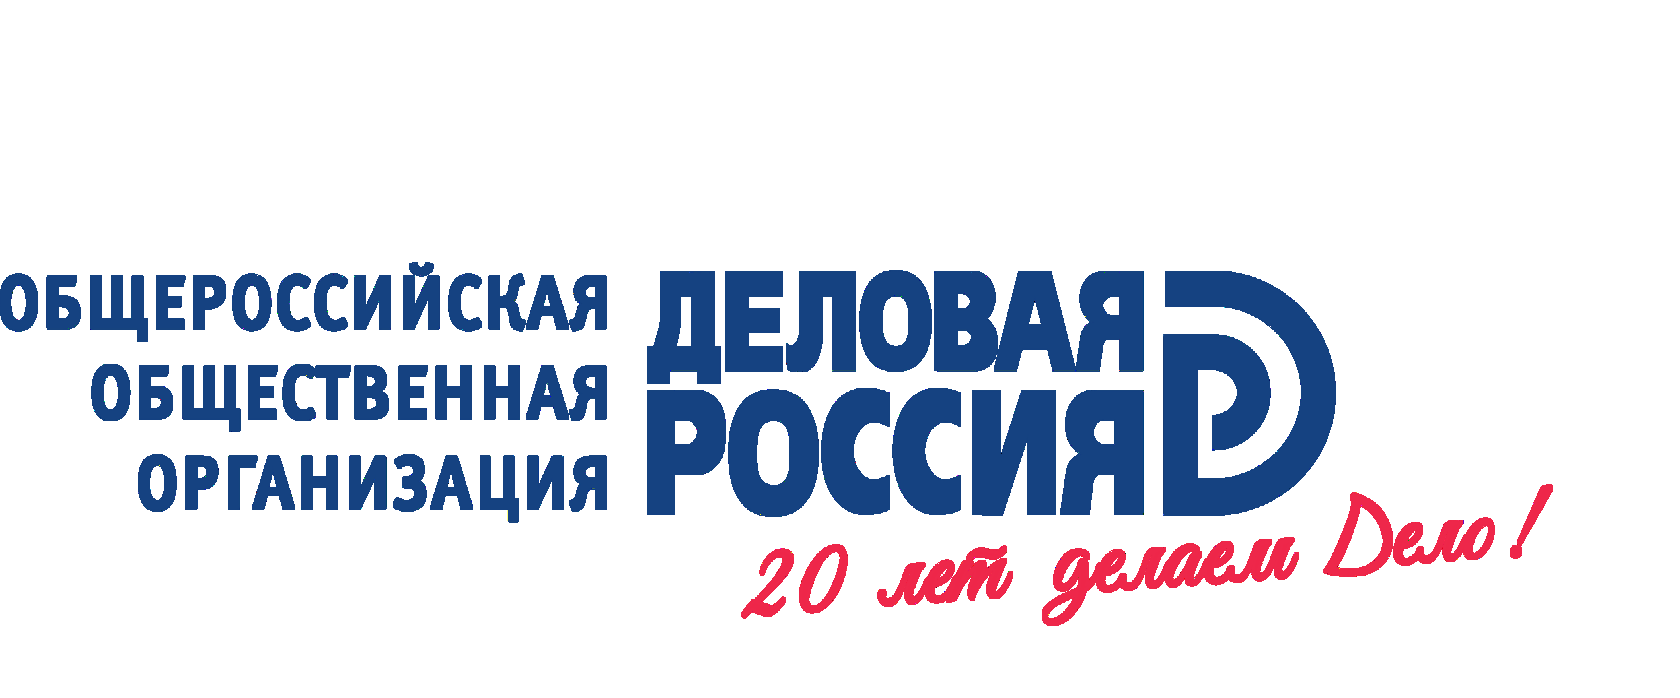 Общественные организации ленинградской области